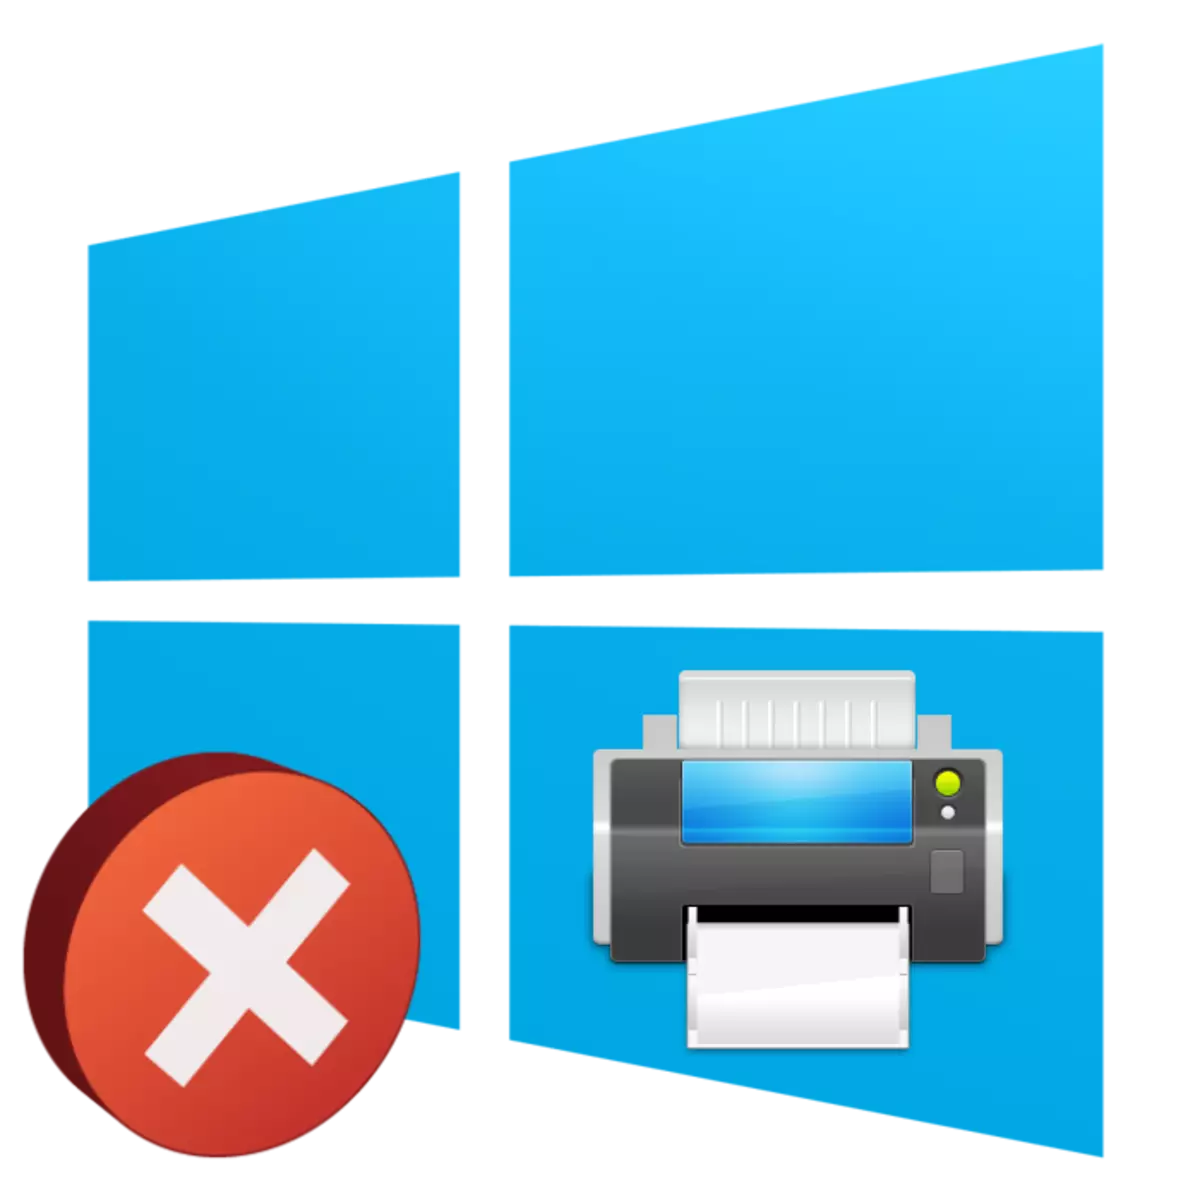 Lokalny podsystem drukowania nie jest wykonywany w systemie Windows 10